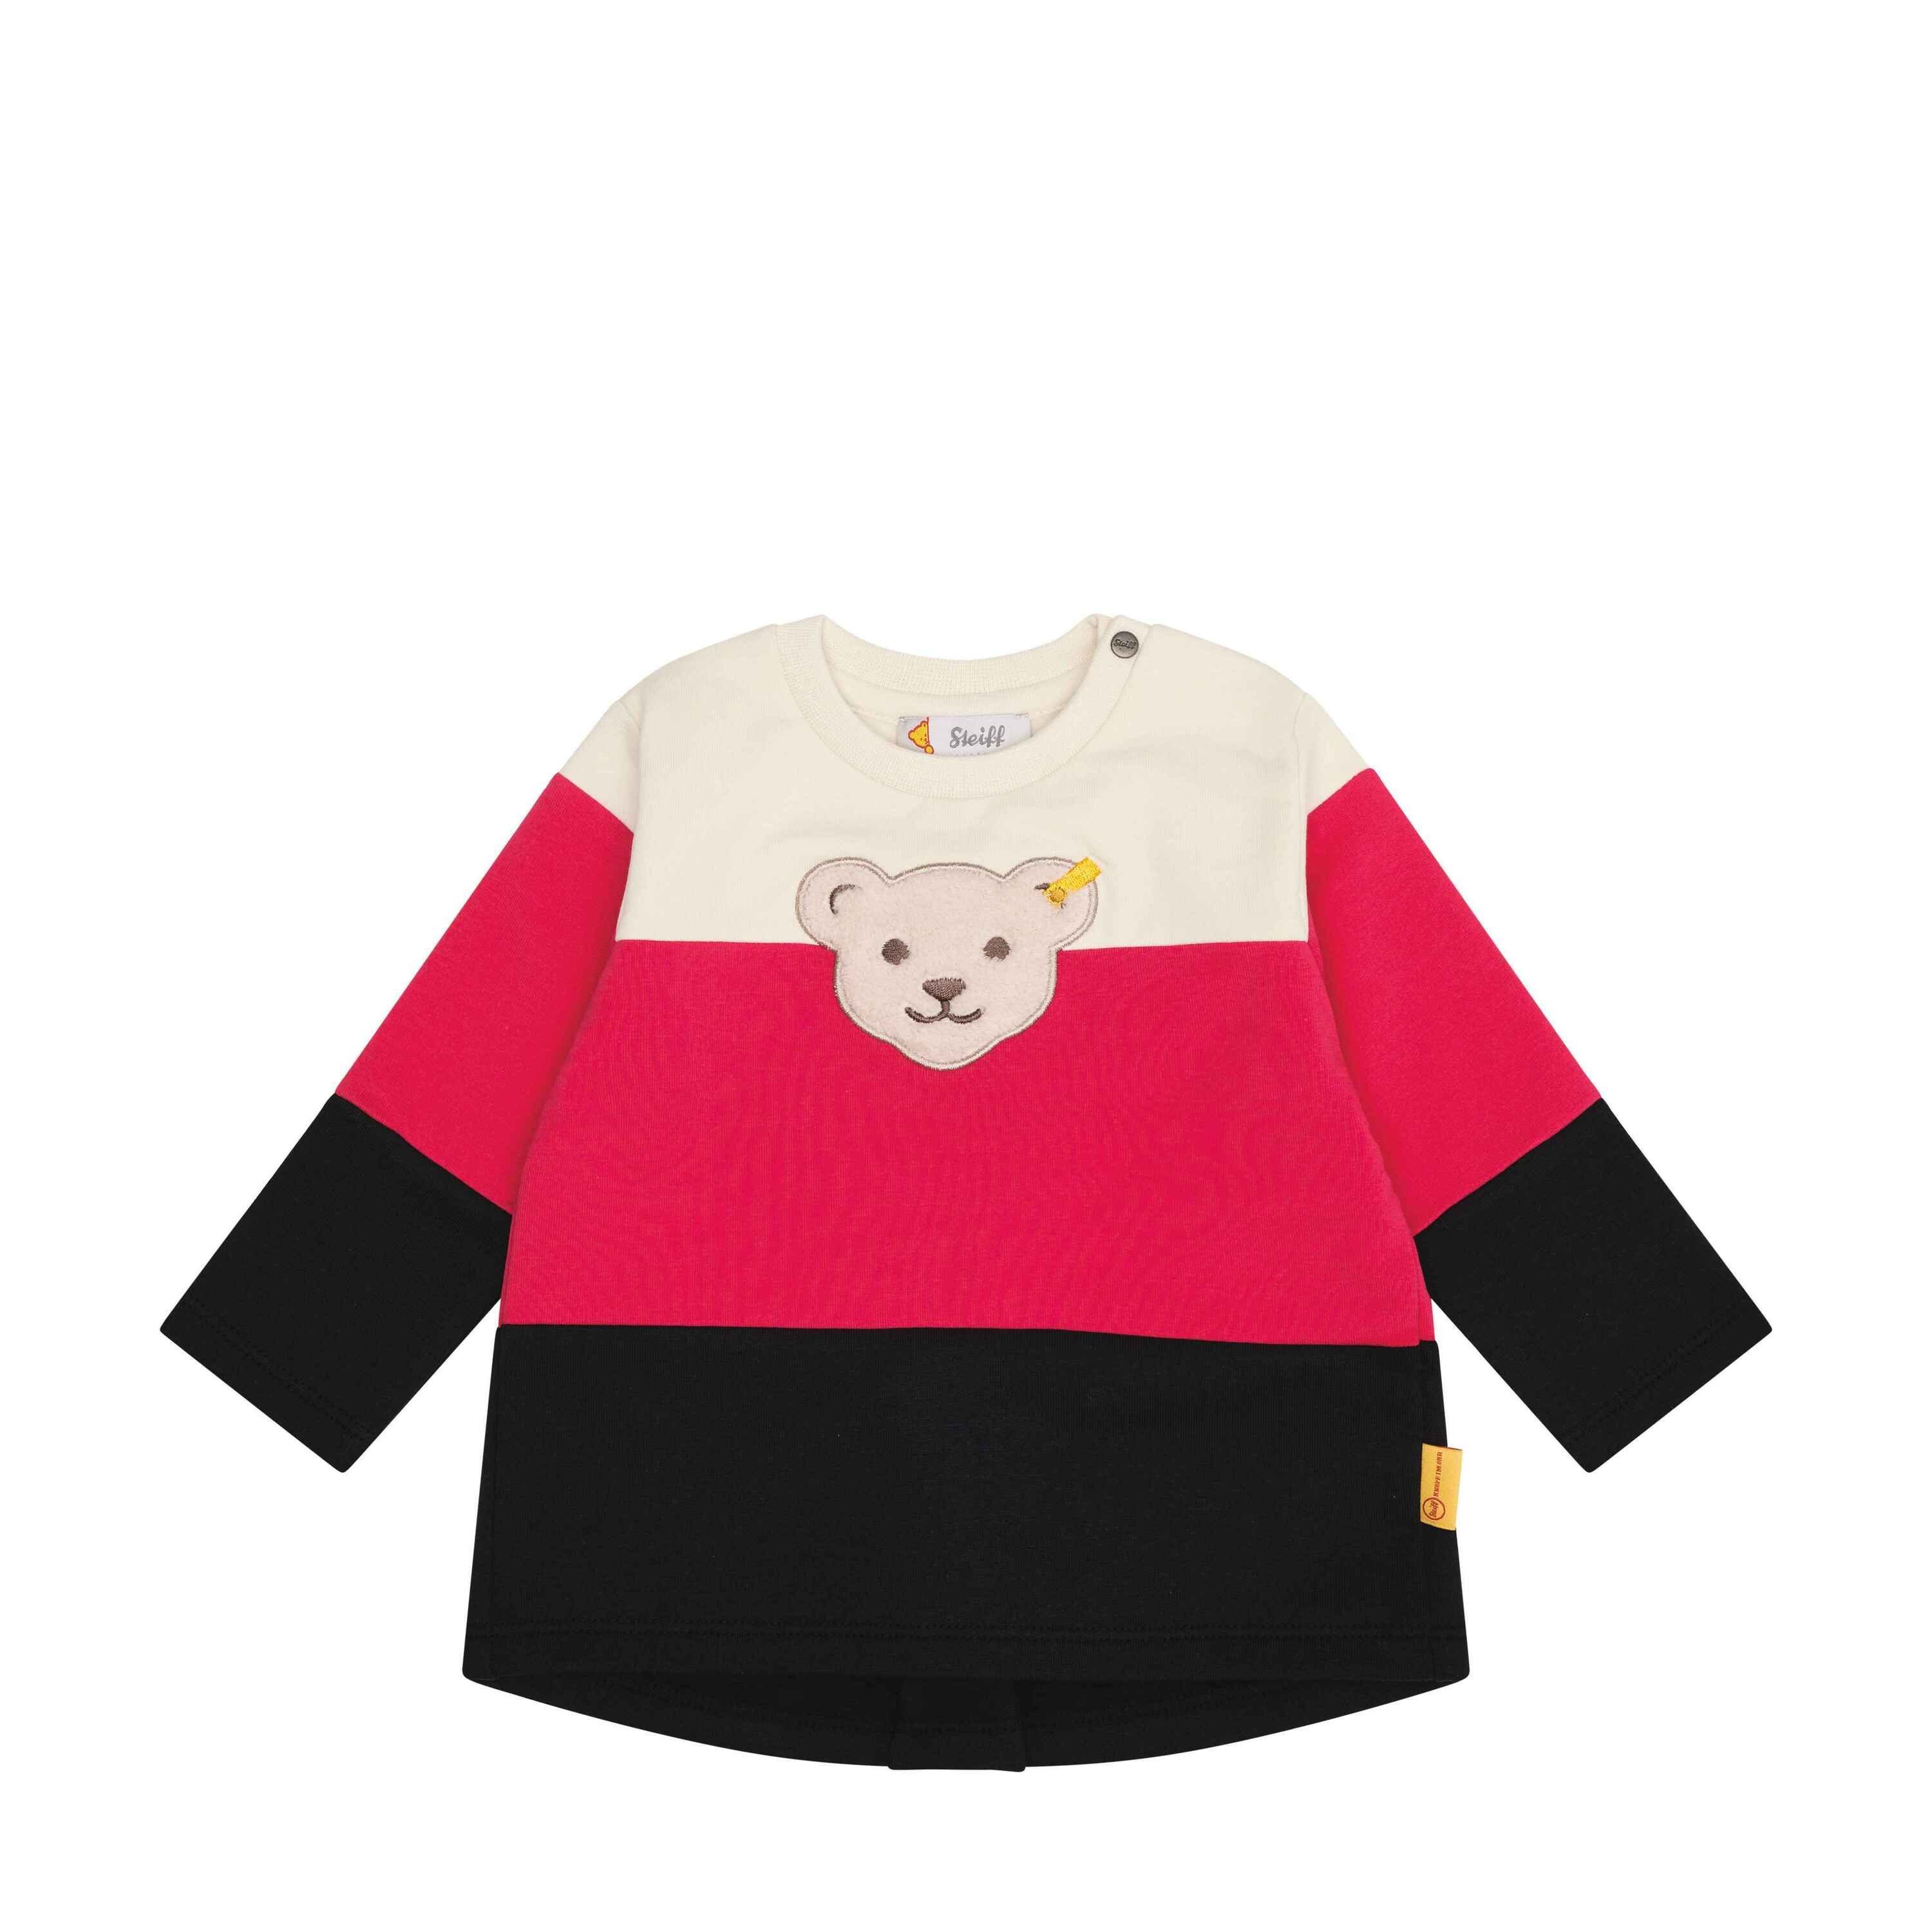 des Steiff Jahr Sweatshirt Teddybären Sweatshirt